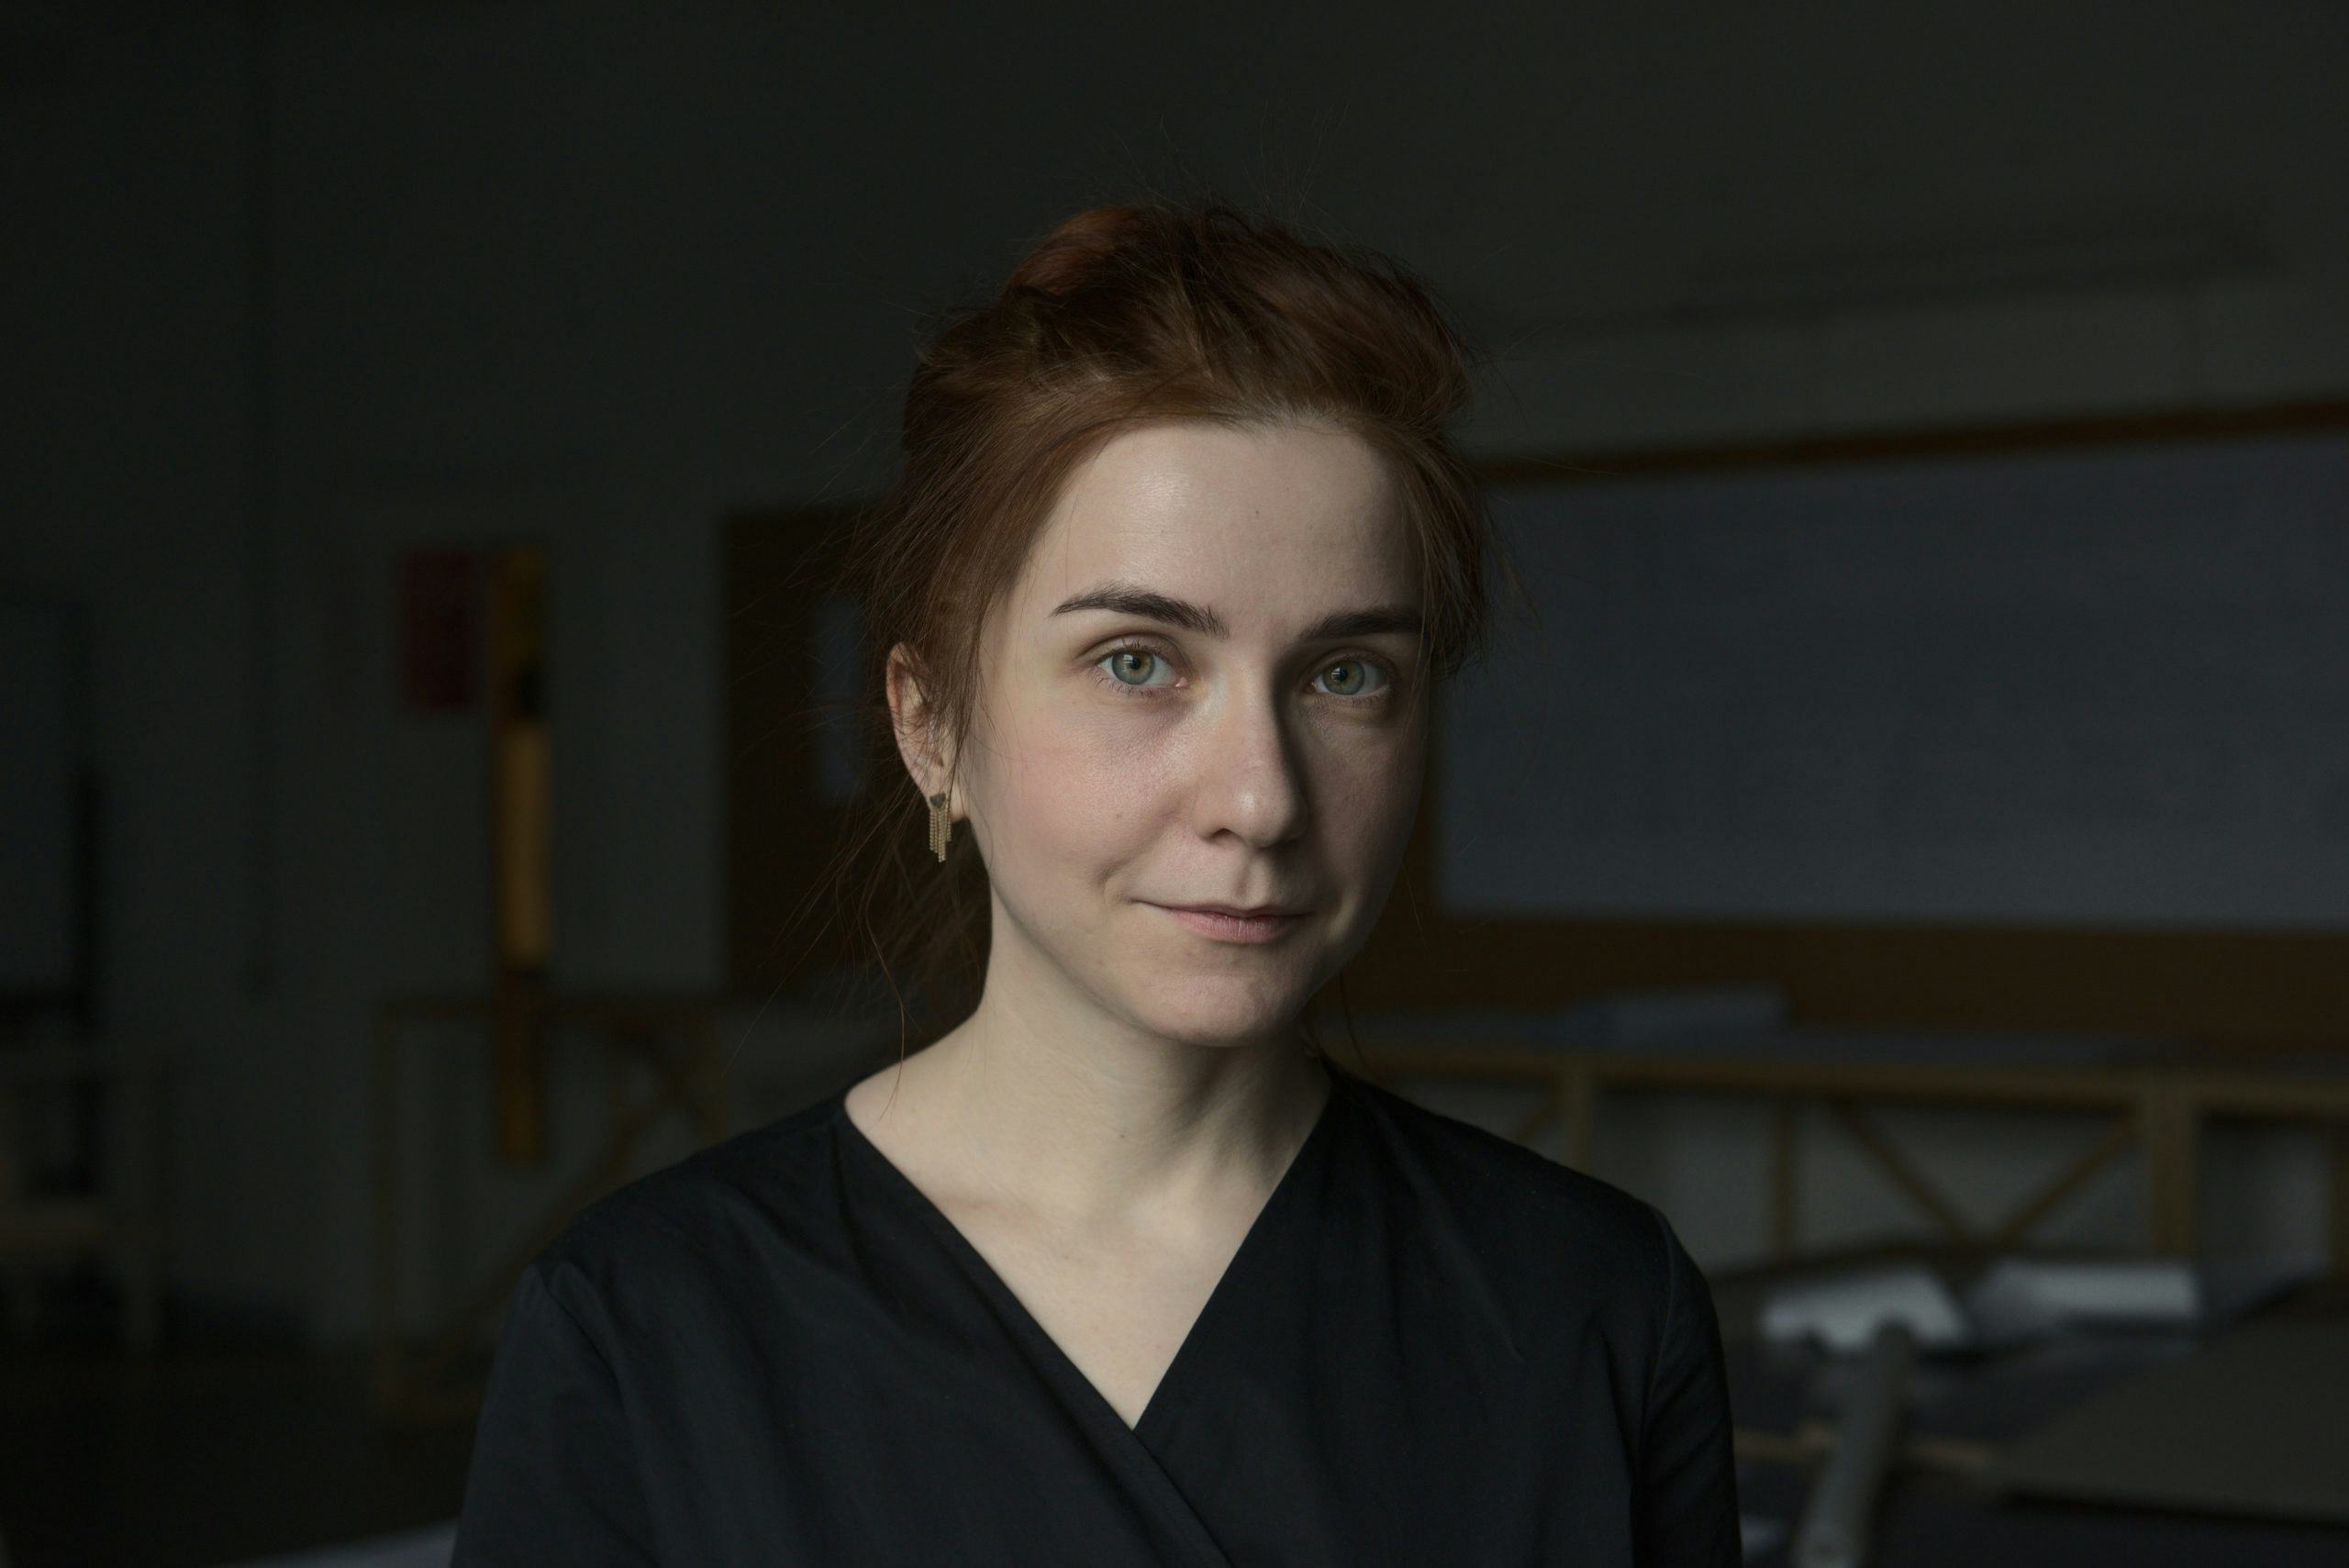 Russische architectuurjournalist Asya Zolnikova: 'Mijn beroep bestaat niet meer in Rusland'